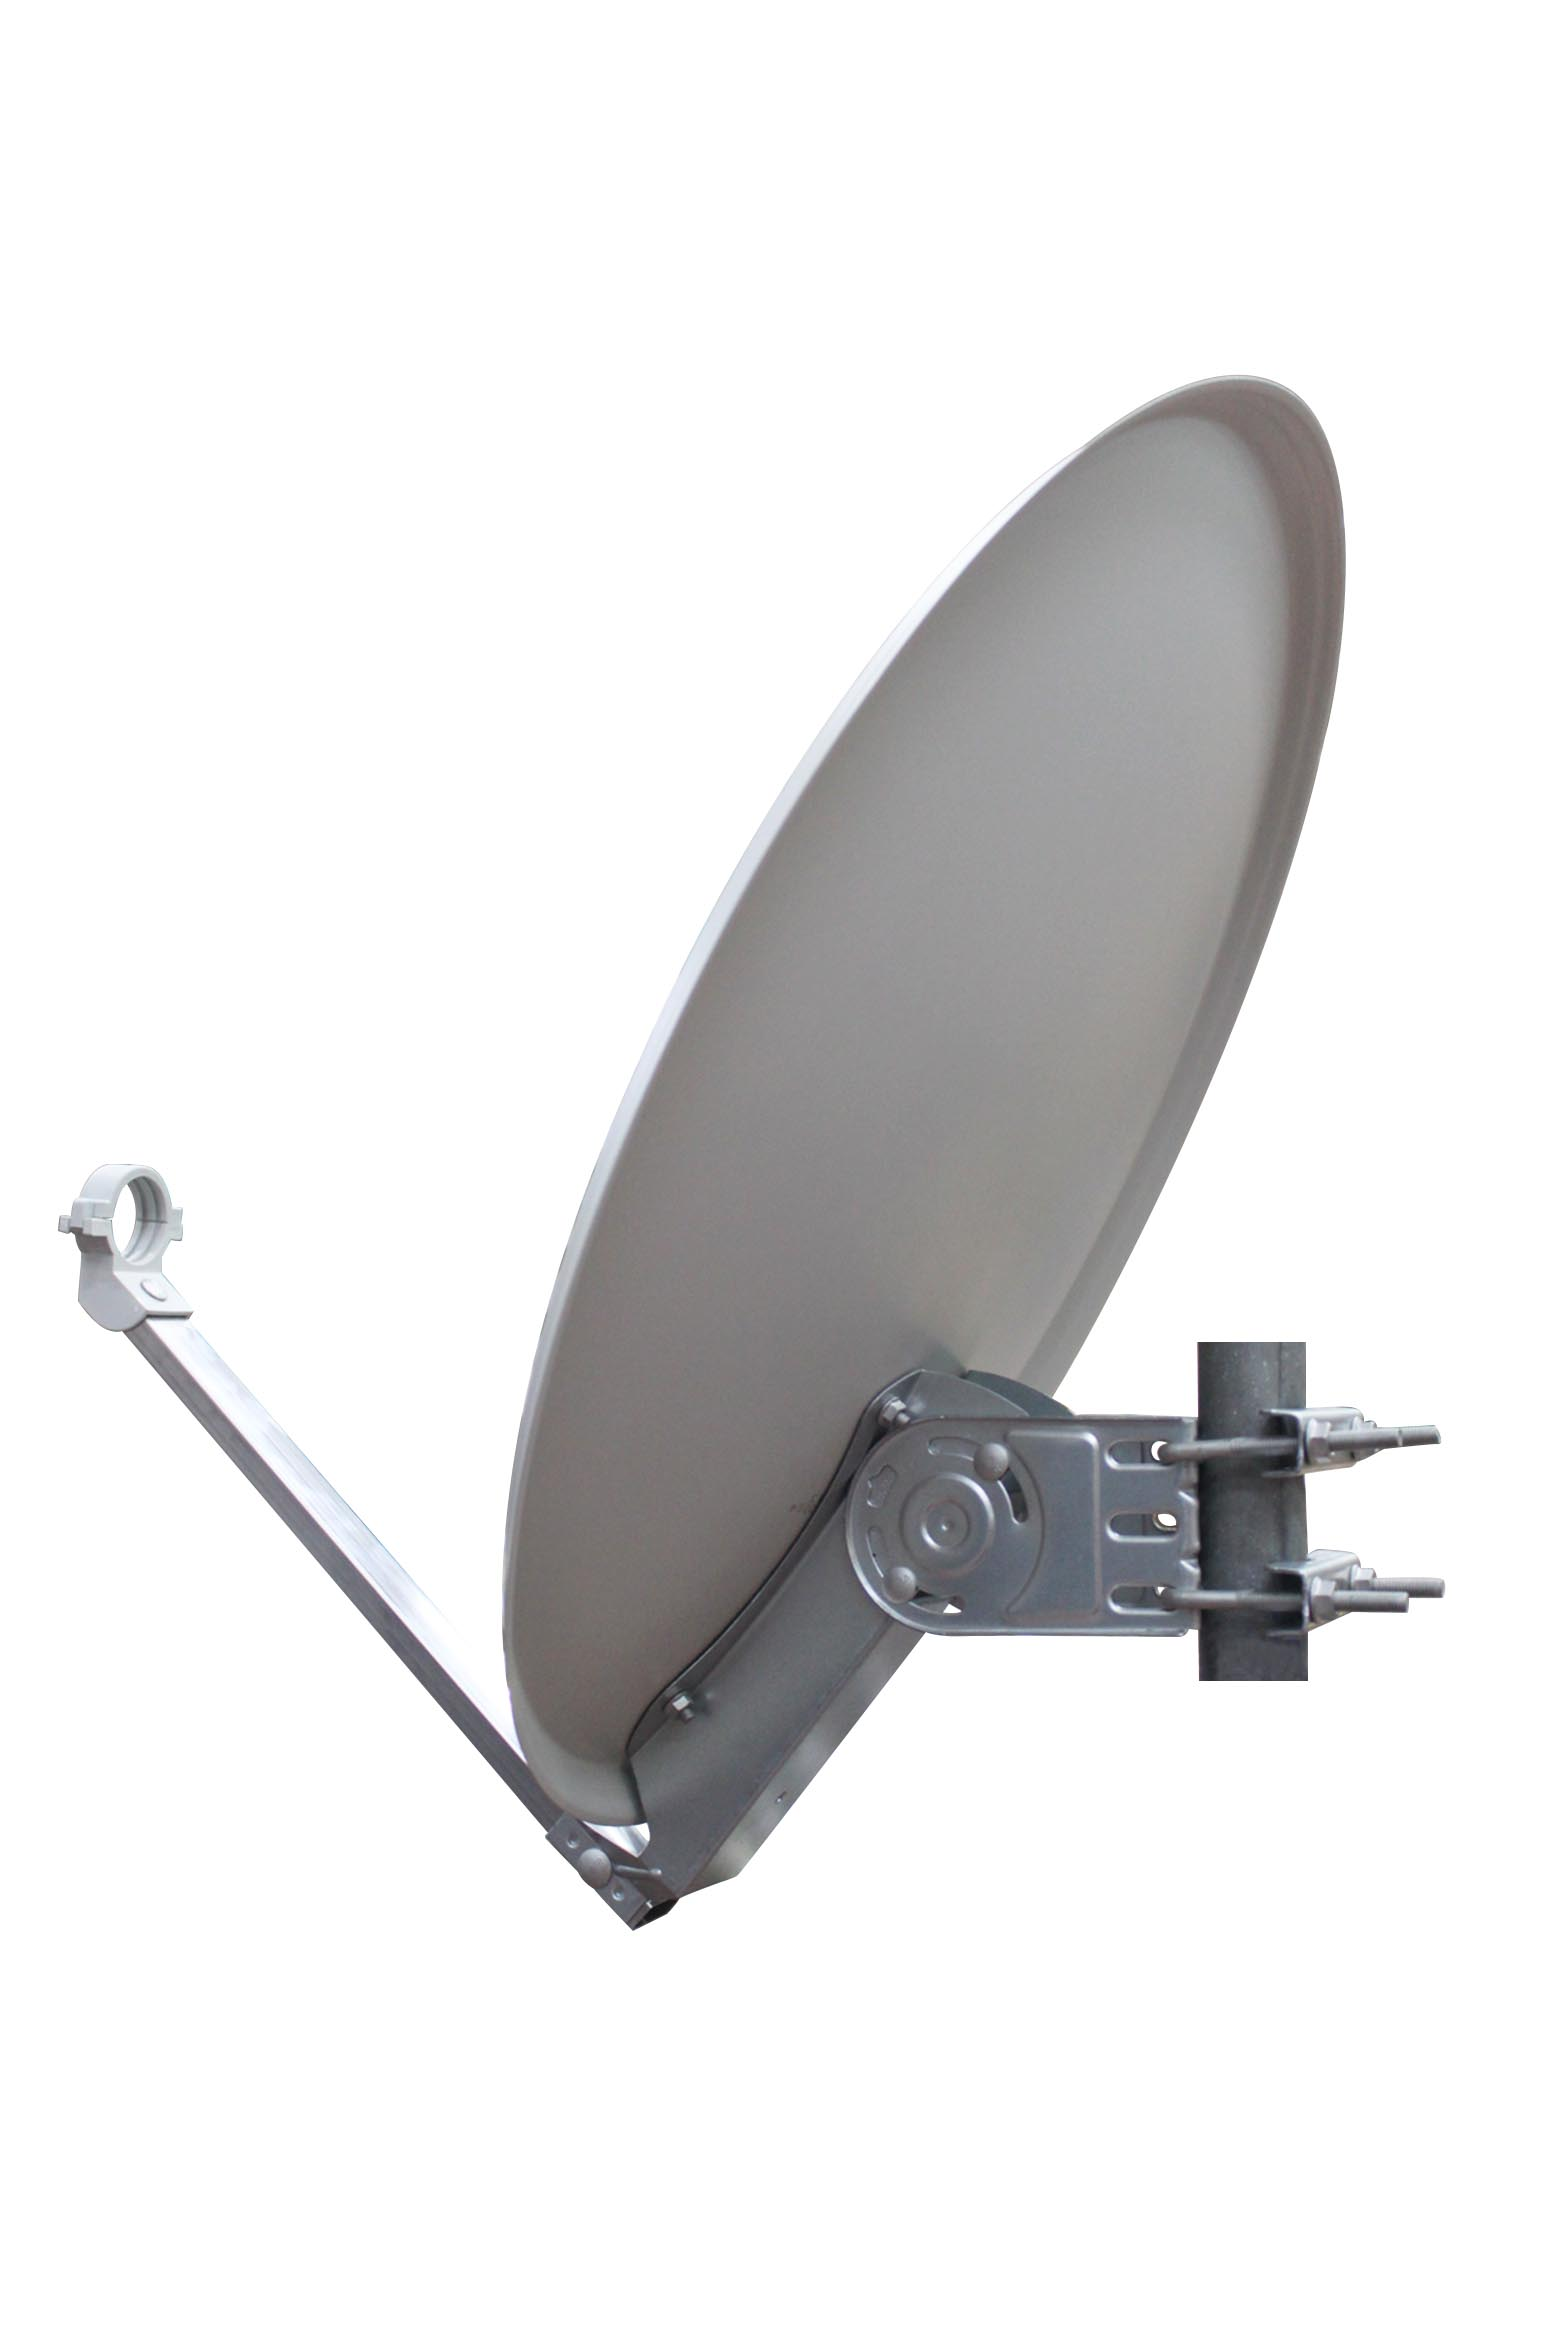 OPTICUM 60 cm Satellitenschüssel aus QA-60 3D RED fähig-Witterungsbeständige Sat-Antenne & Satellitenantenne HD lichtgrau-4K Stahl